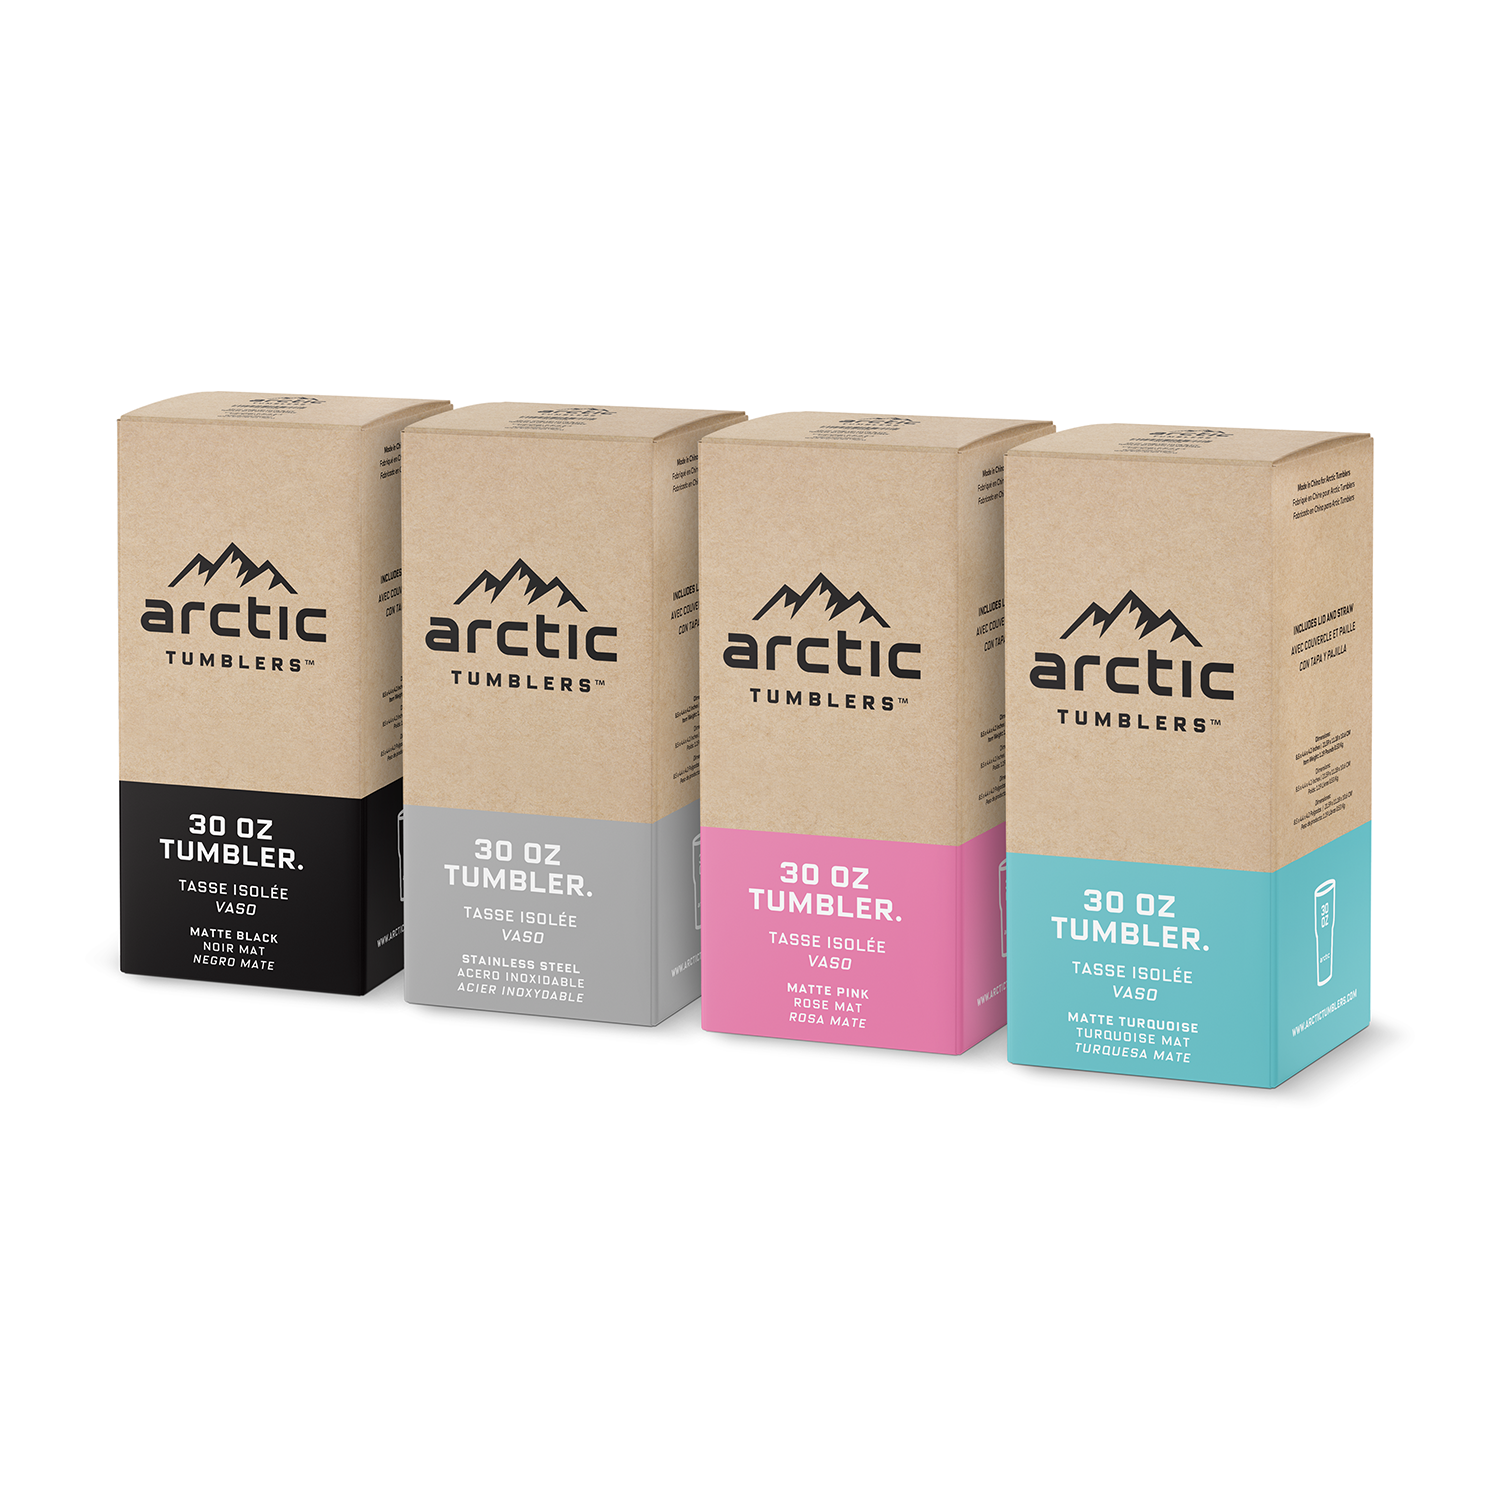 Bundle Pack: 4 Tumblers in 4 Colors - Arctic Tumblers